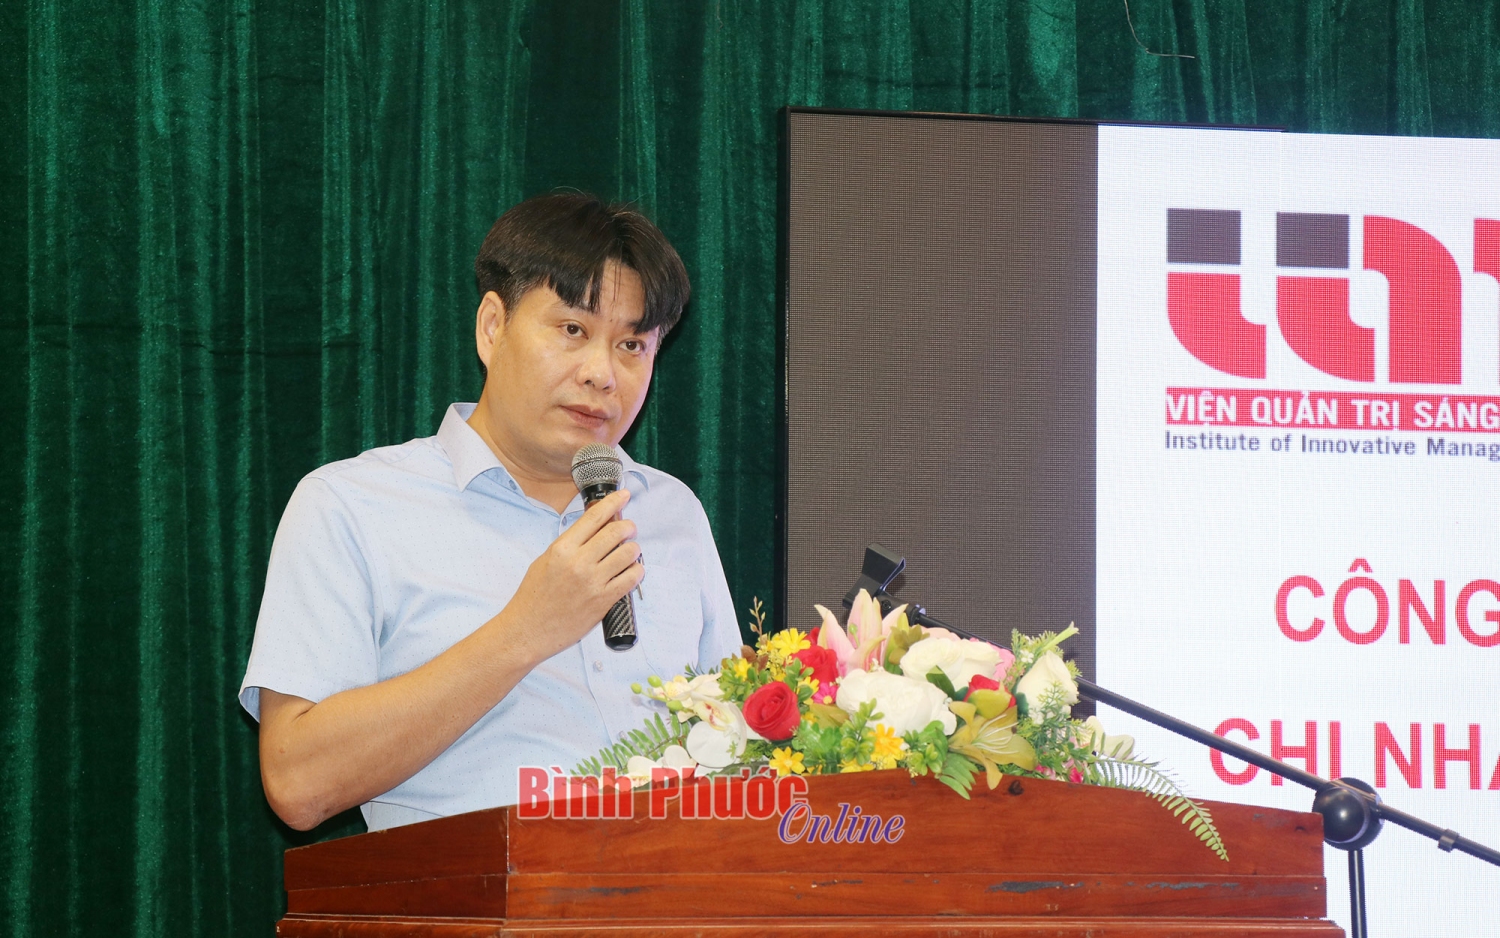 Tiến sĩ Nguyễn Tuấn Anh, Viện trưởng Viện Quản trị sáng tạo phát biểu tại buổi lễ